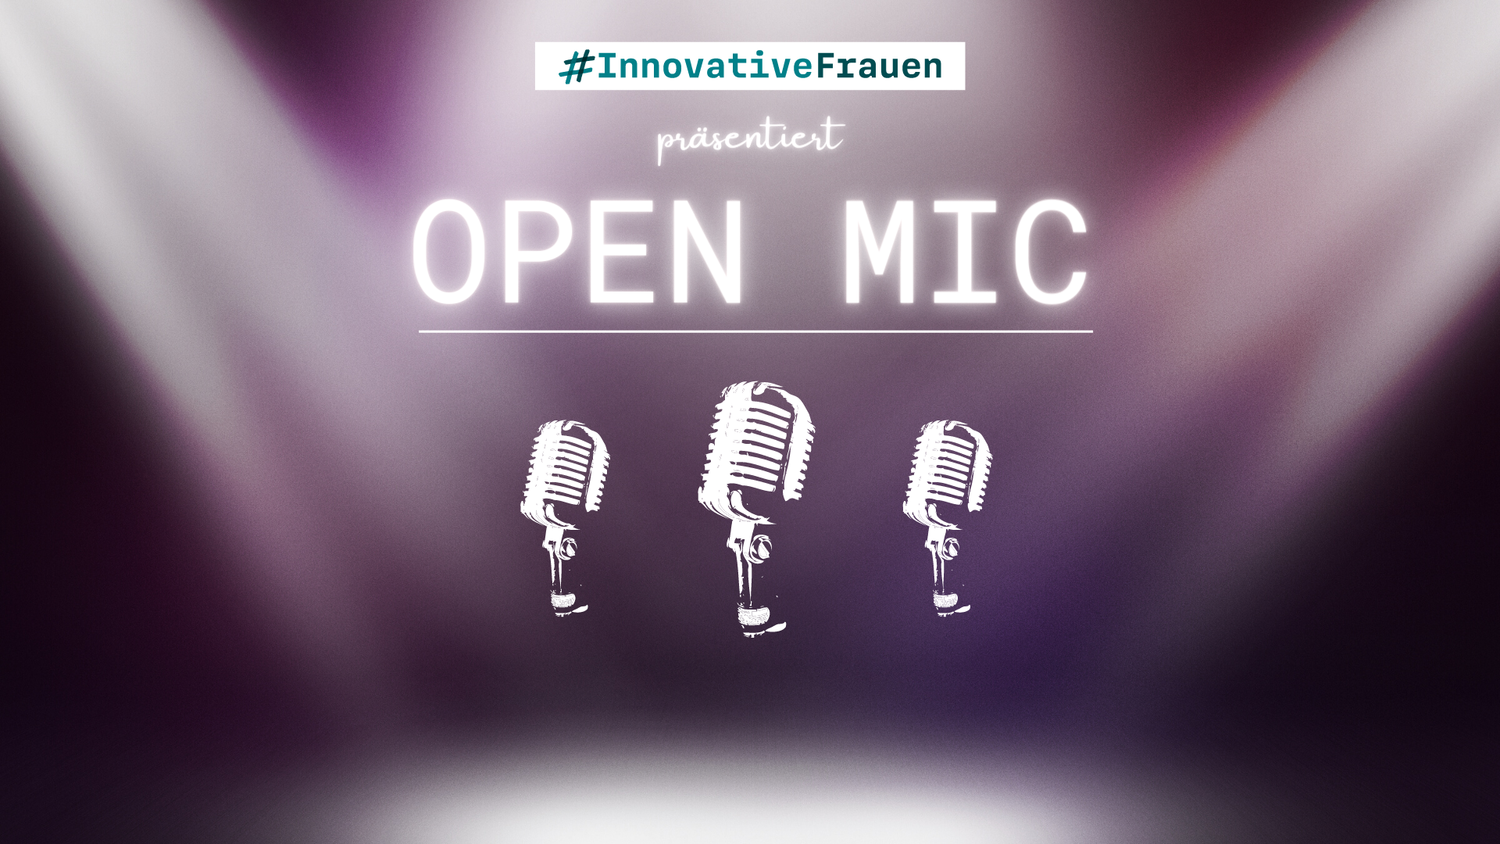 Grafik mit drei Mikrofonen und der Aufschrift #InnovativeFrauen präsentiert Open Mic